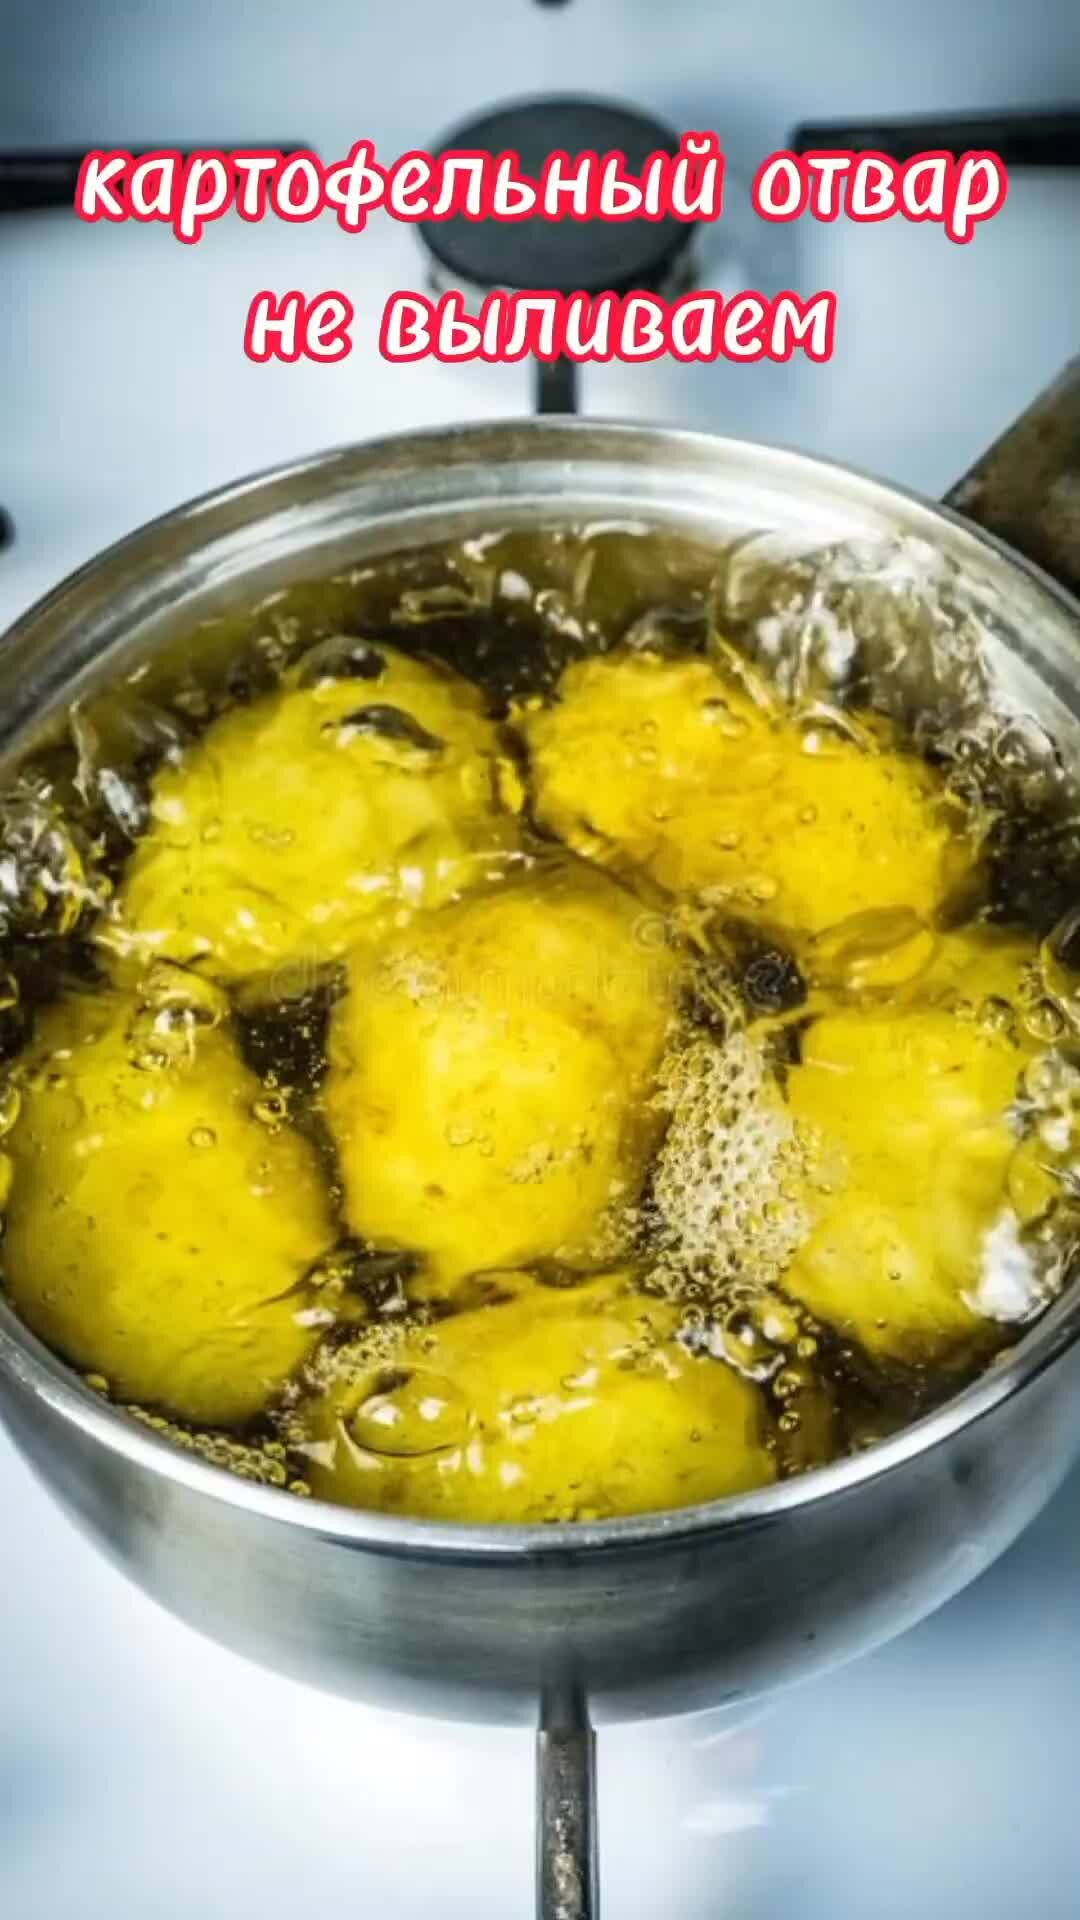 Варить картошку в кипящей воде. Картофель в кипящей воде. Картофель в кастрюле. Закипевшая картошка. Картошка варится в воде.